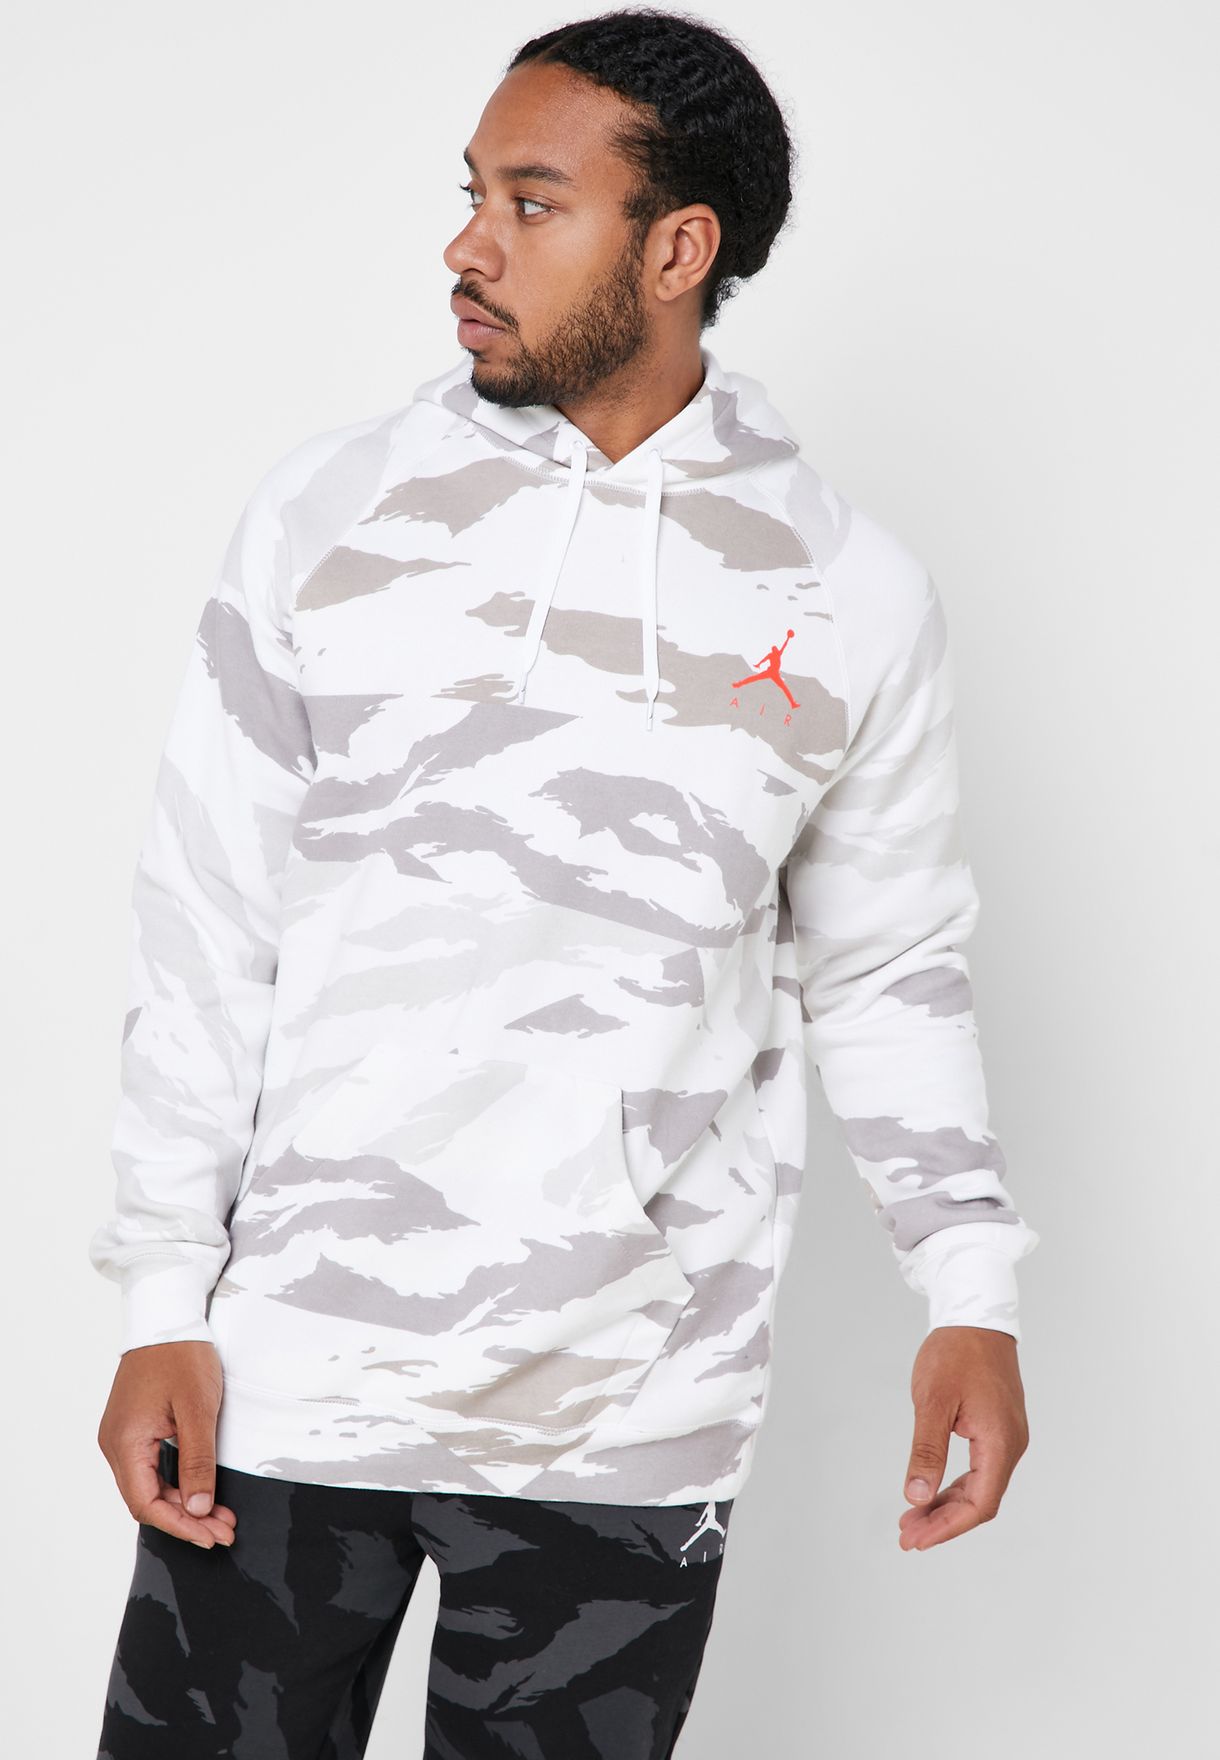 air jordan camouflage hoodie